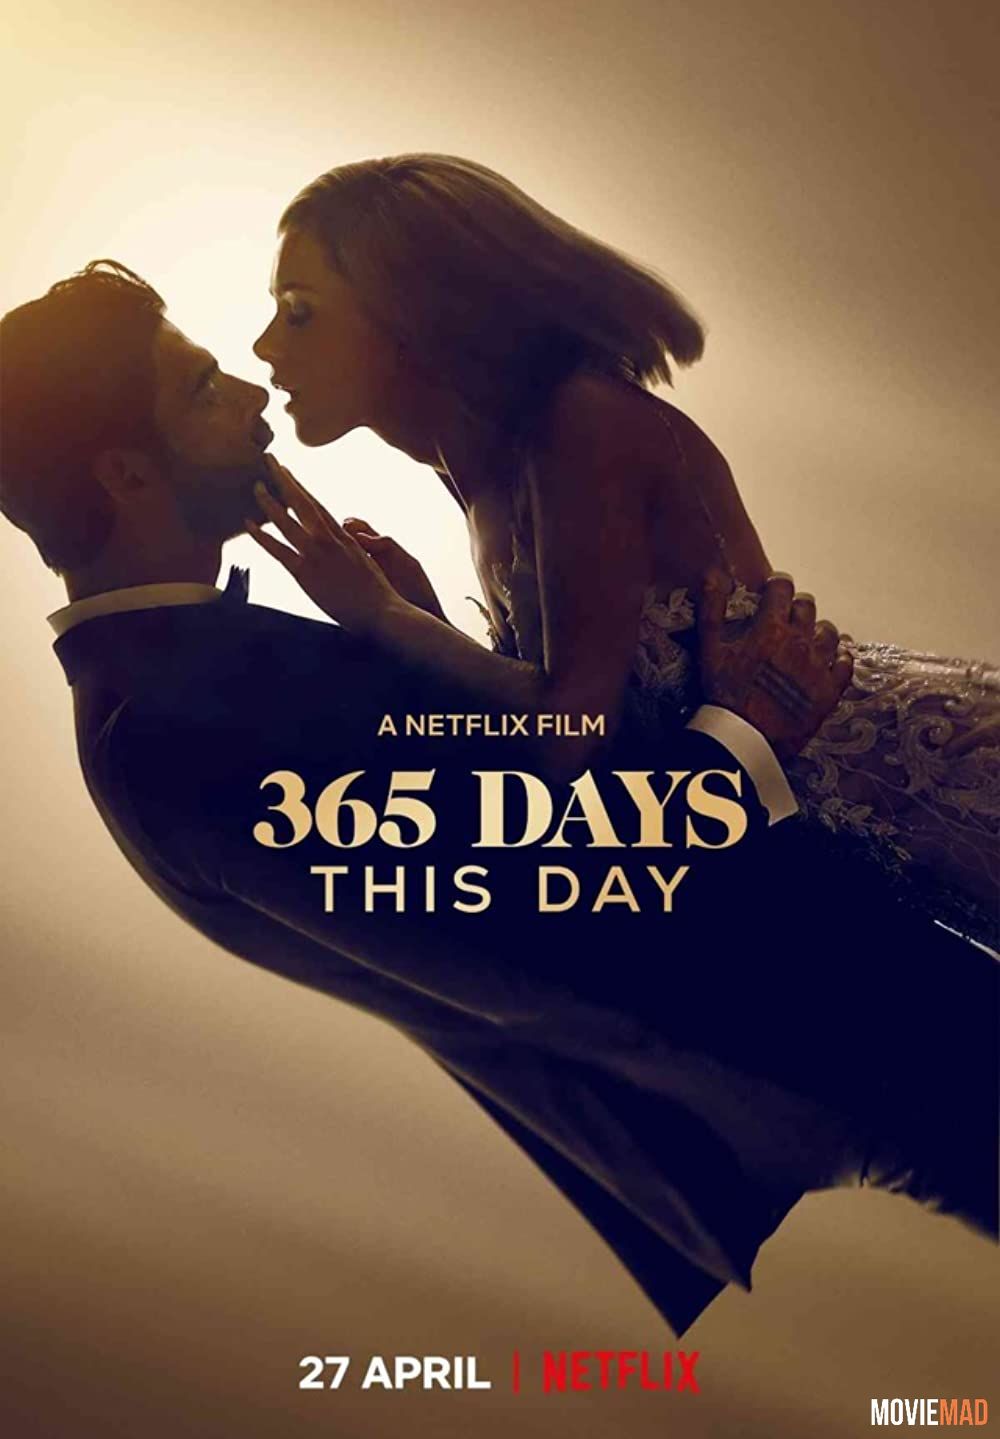 18+ 365 Days This Day (2022) Hindi Dubbed HDRip Netflix Full Movie 1080p 720p 480p